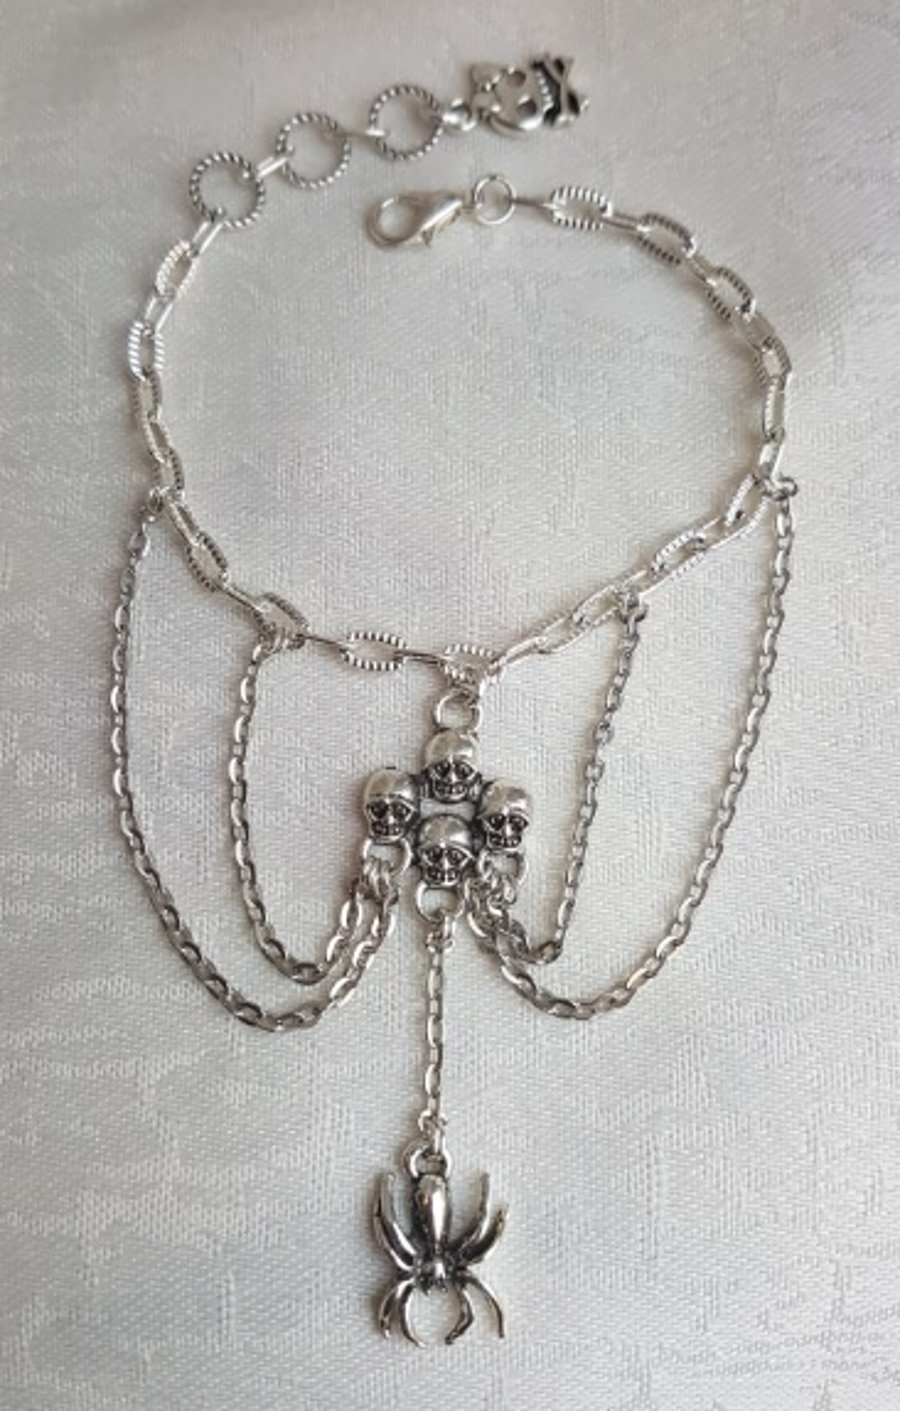 Spider Queen Chain Bracelet - Silver tone